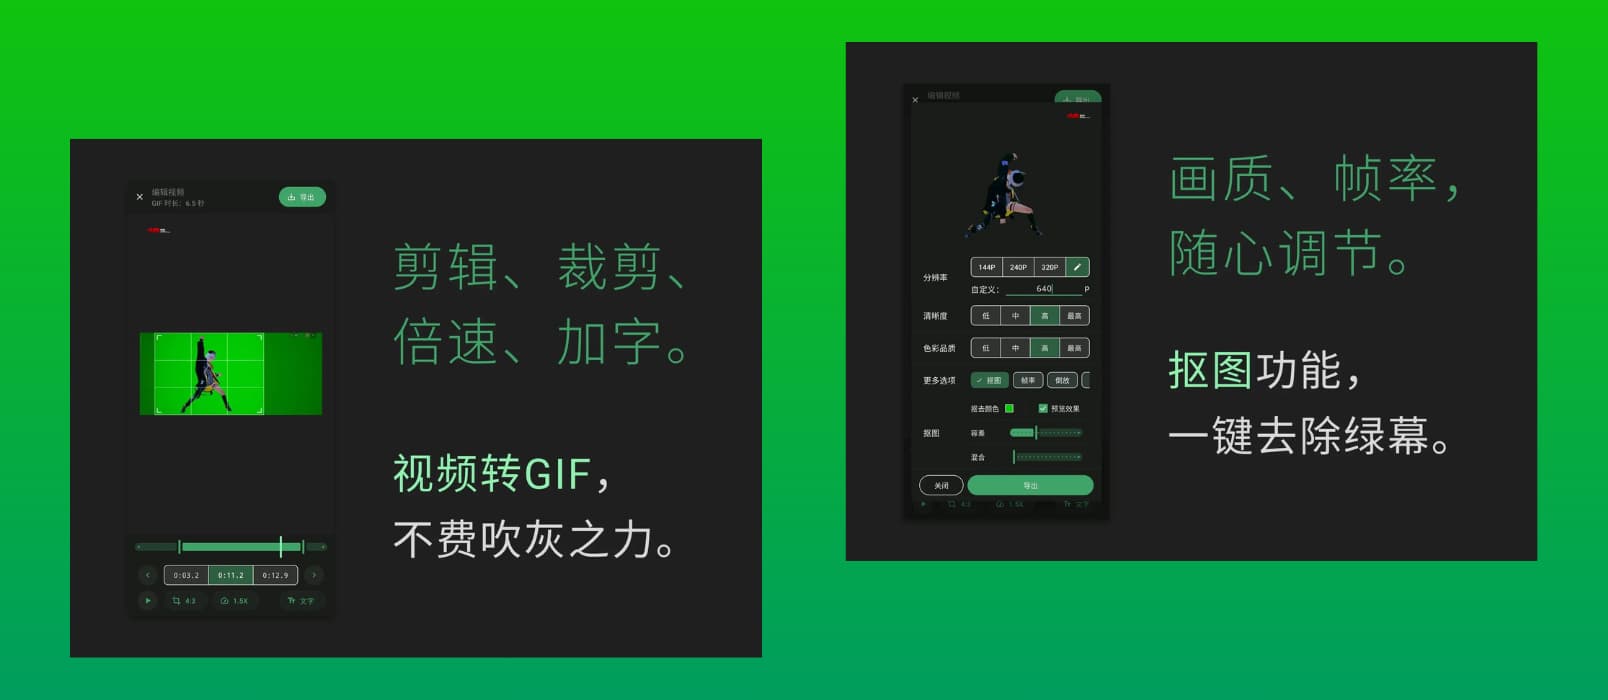 小萌GIF – 免费、开源，将视频转换为 GIF[Android]